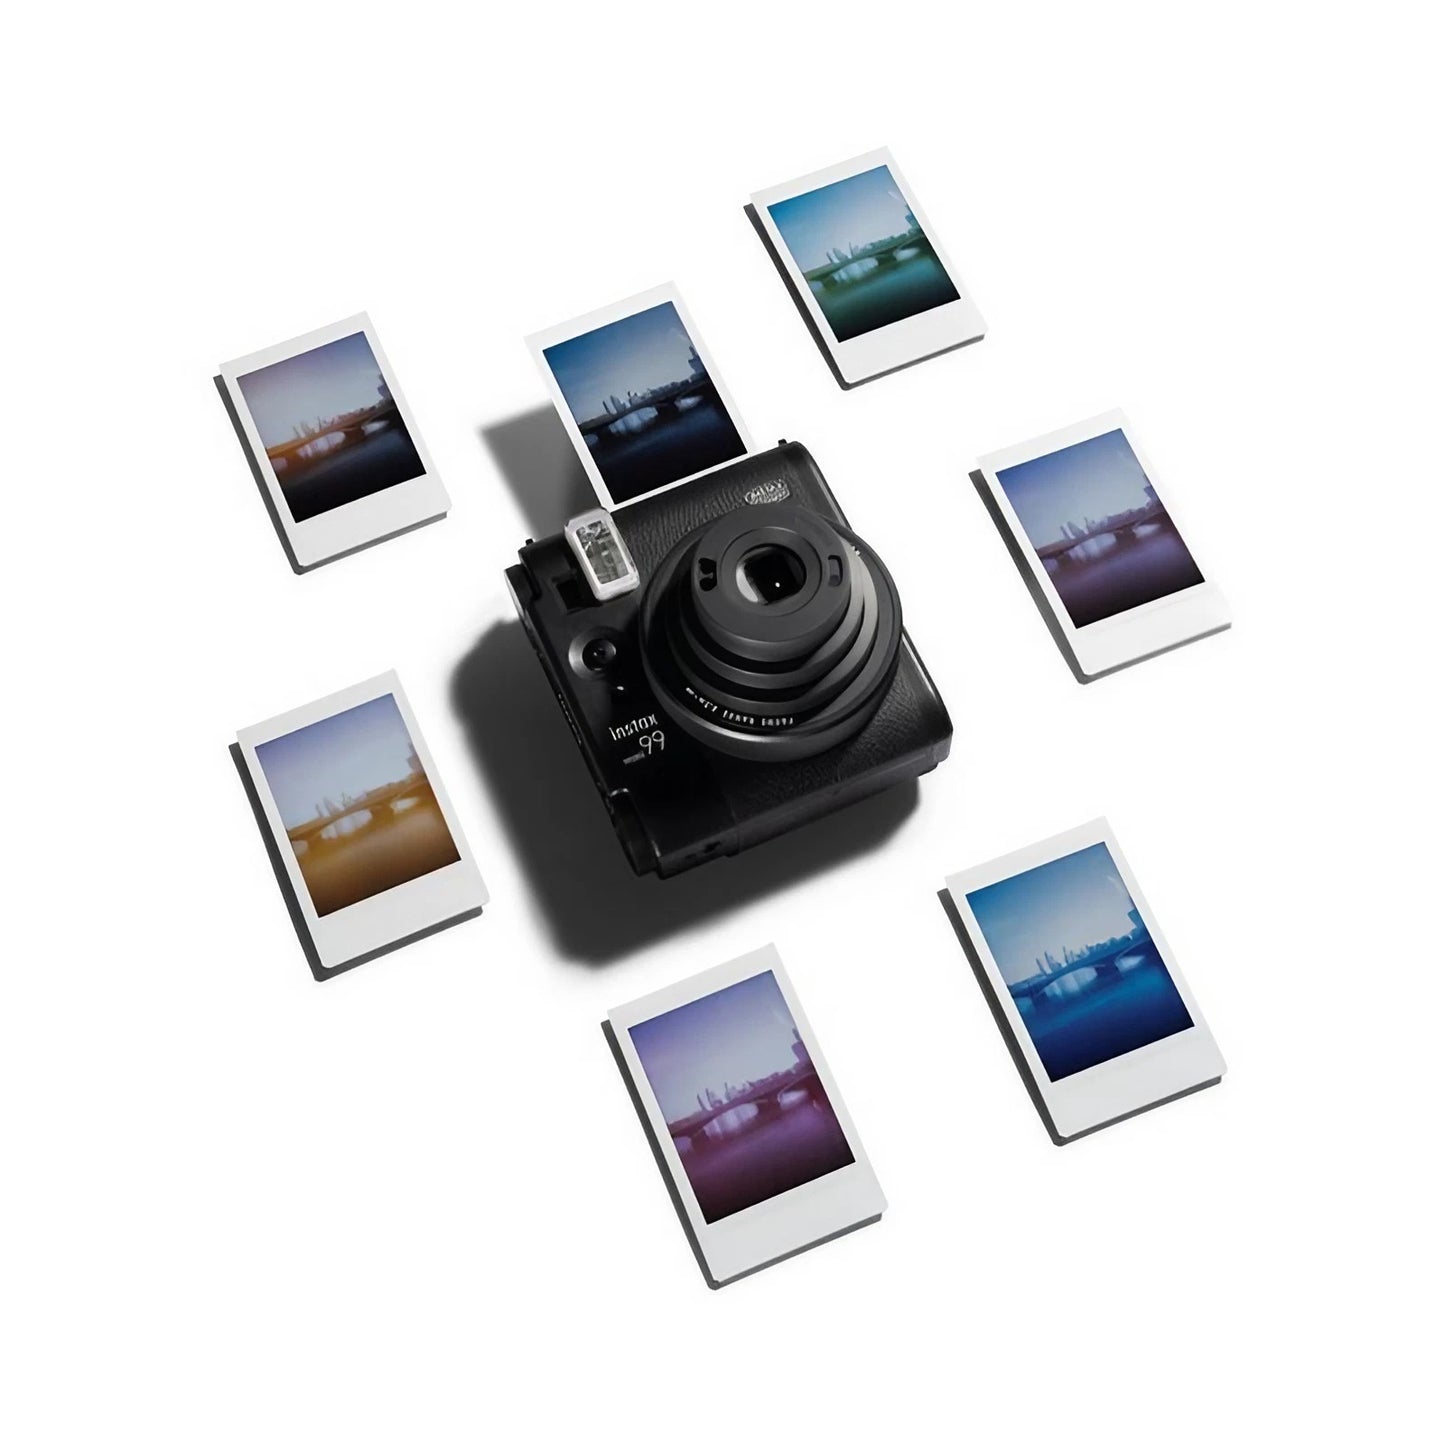 Fujifilm instax mini 99 Instant Film Camera (Black) (Parallel Import)